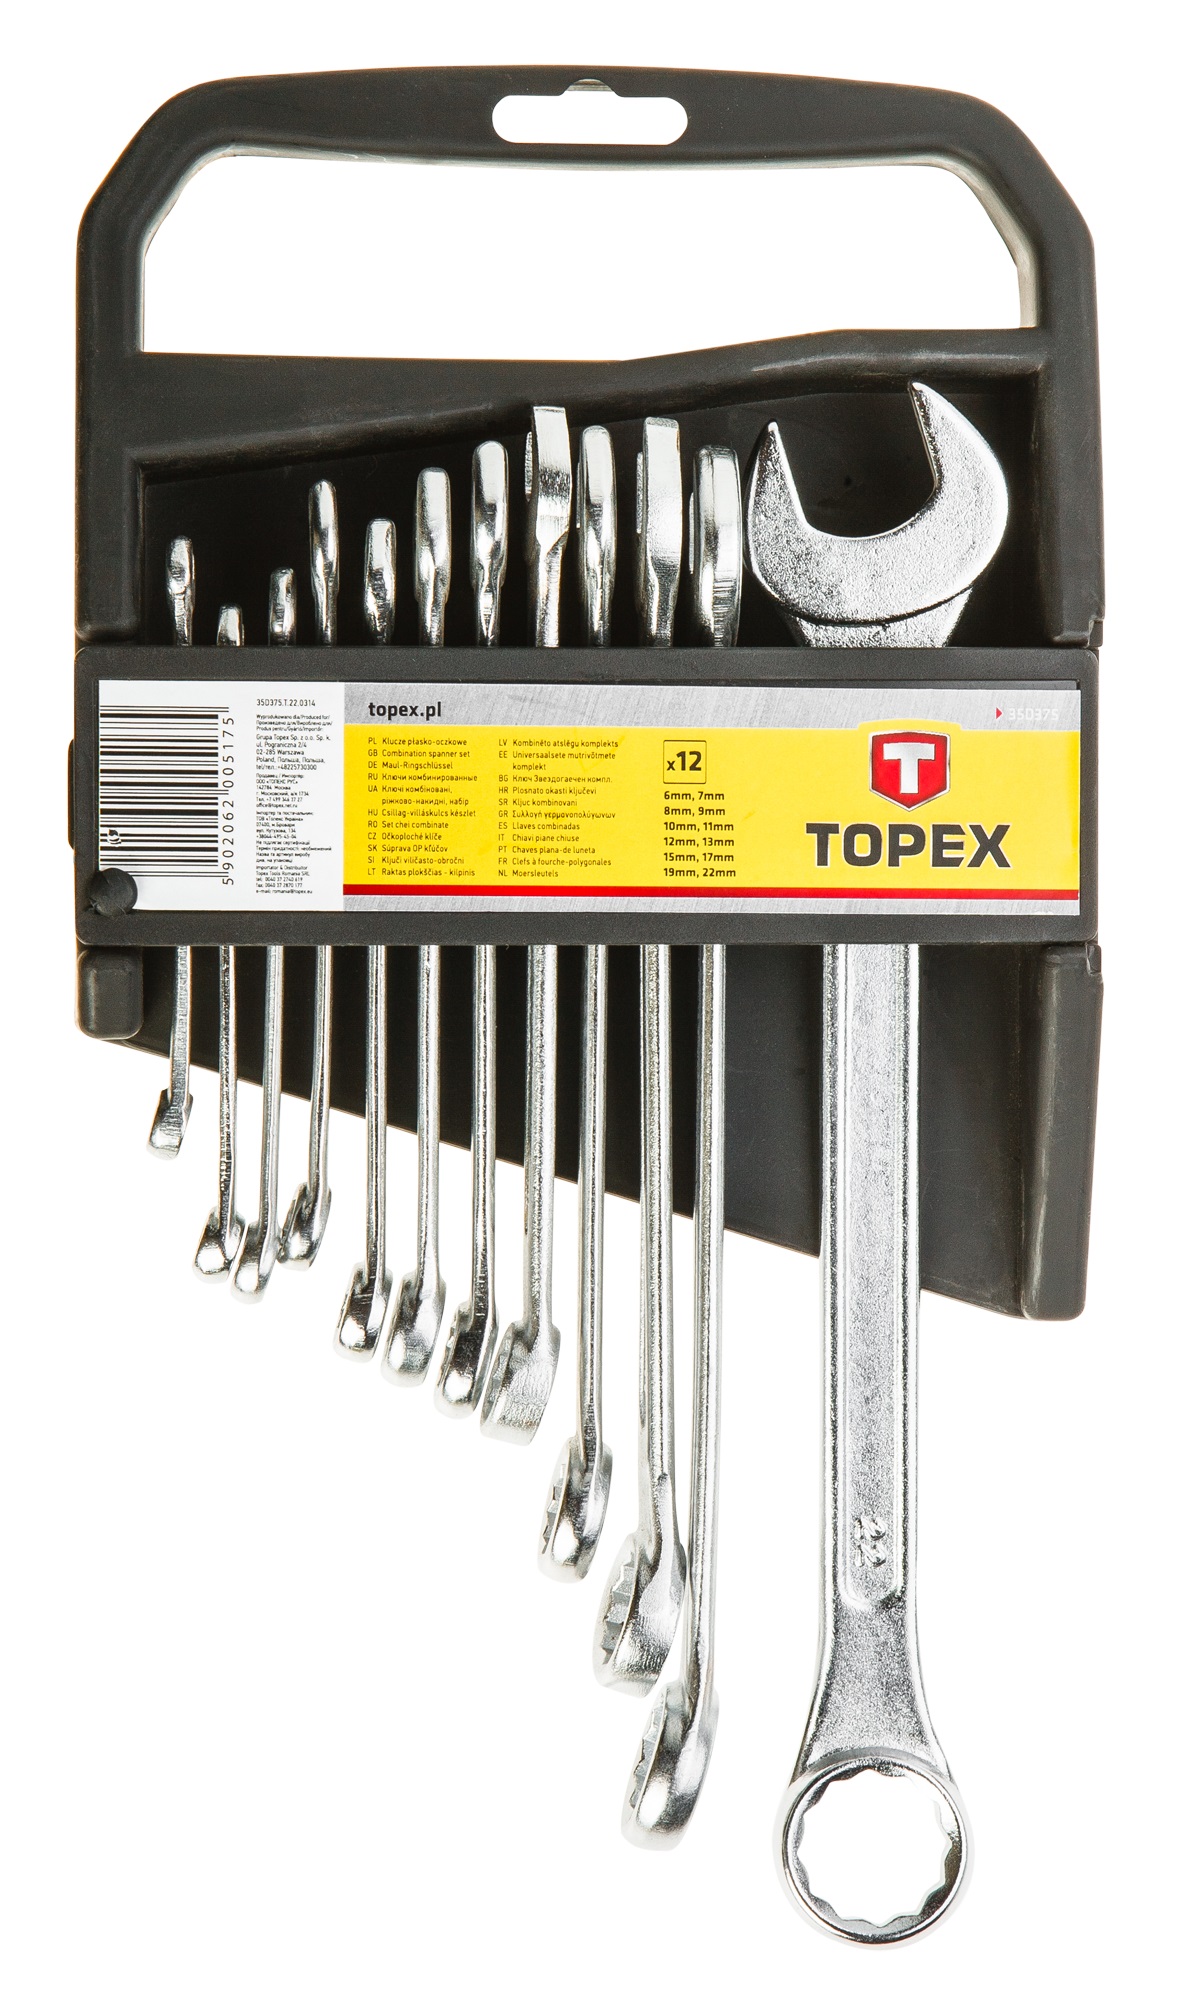 Отзывы набор ключей Topex 35D375